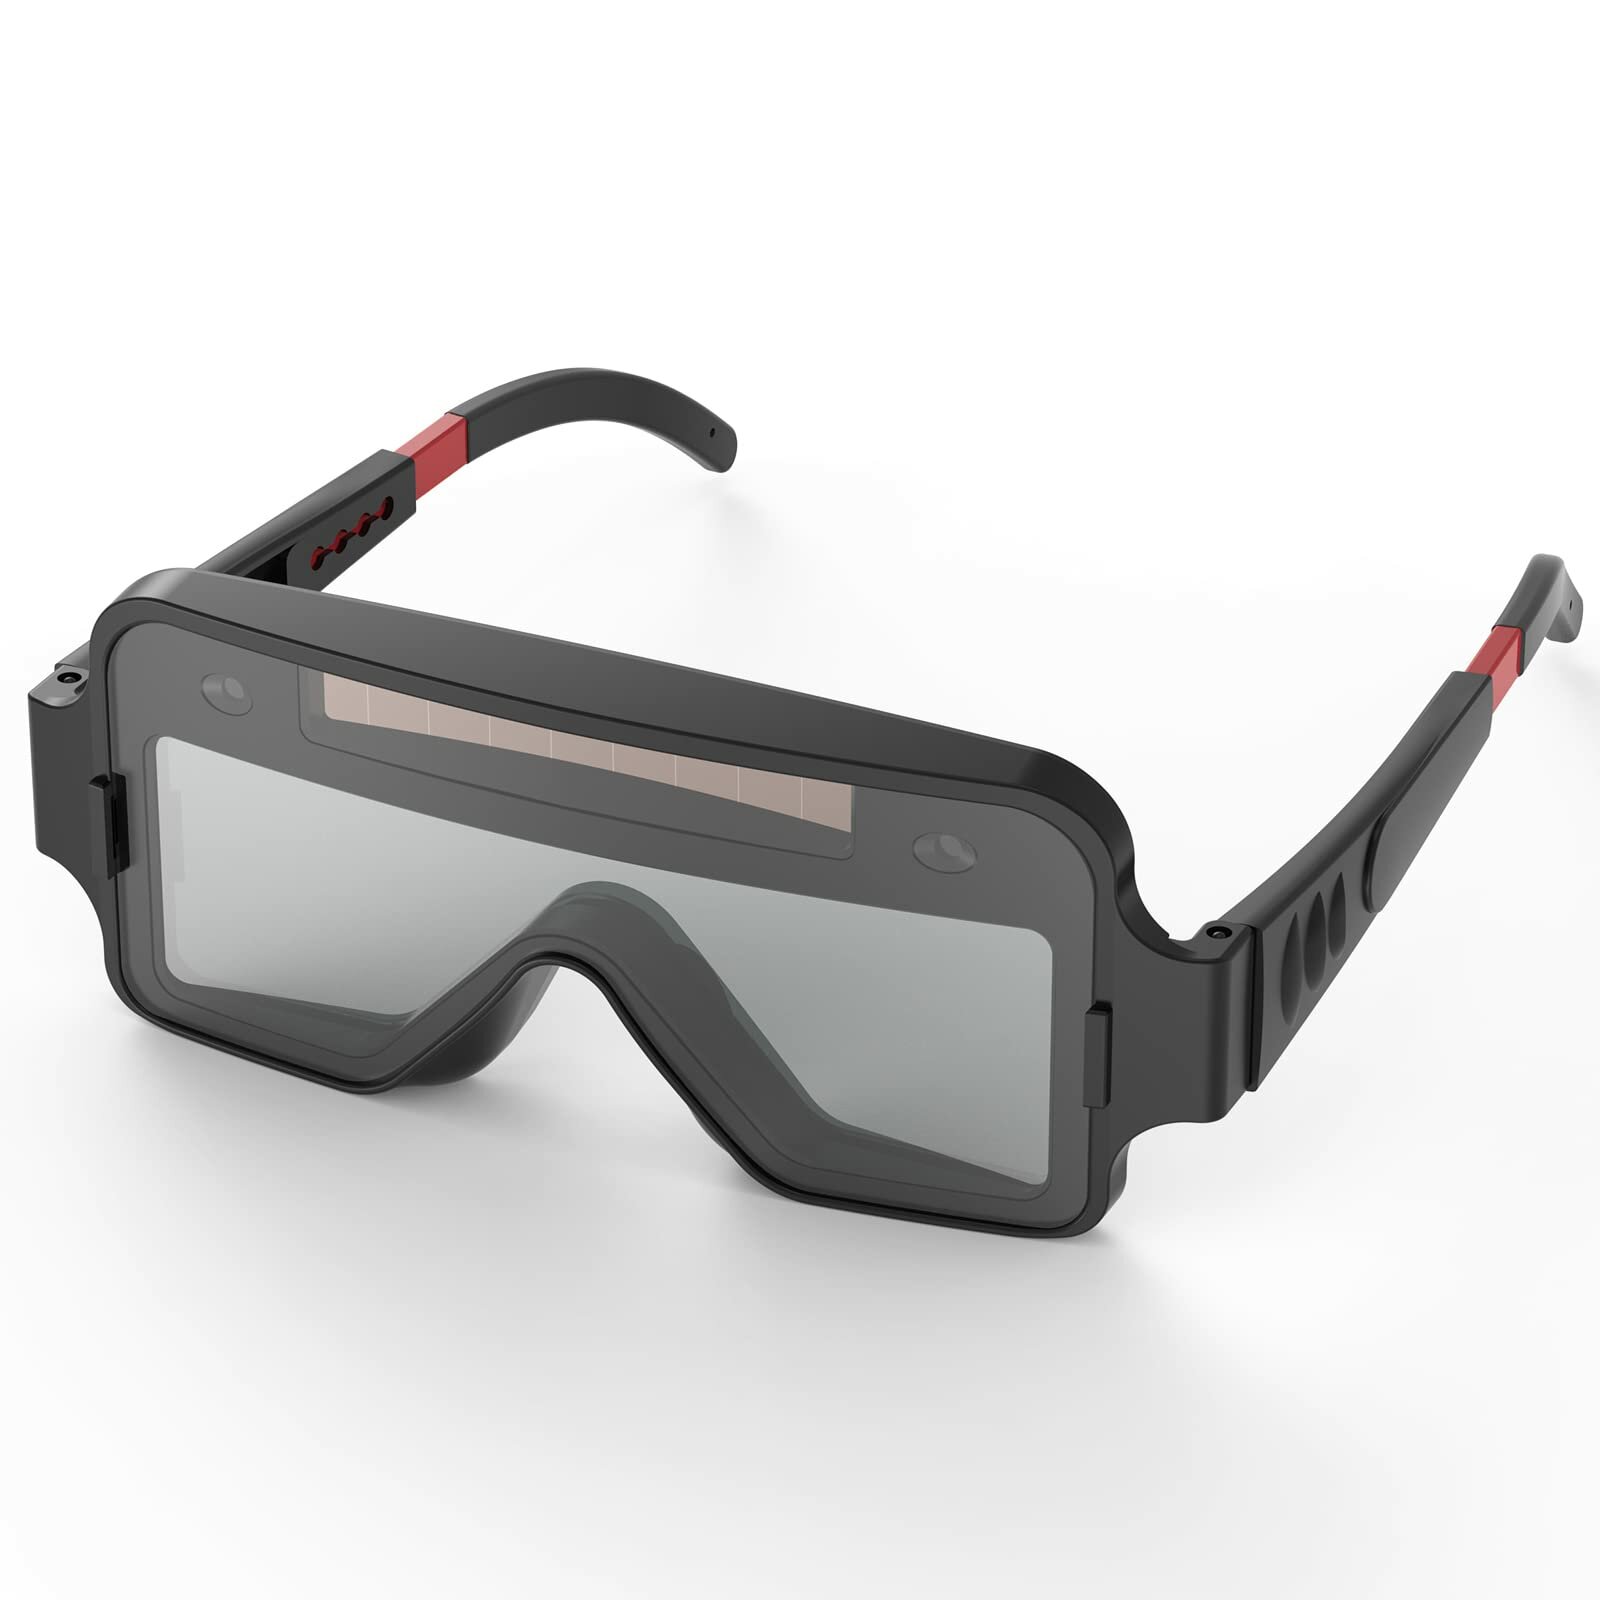 Zonnebril Speciale antireflectiebril Hulpmiddelen voor lassers Upgrade Bestand tegen ultraviolette s